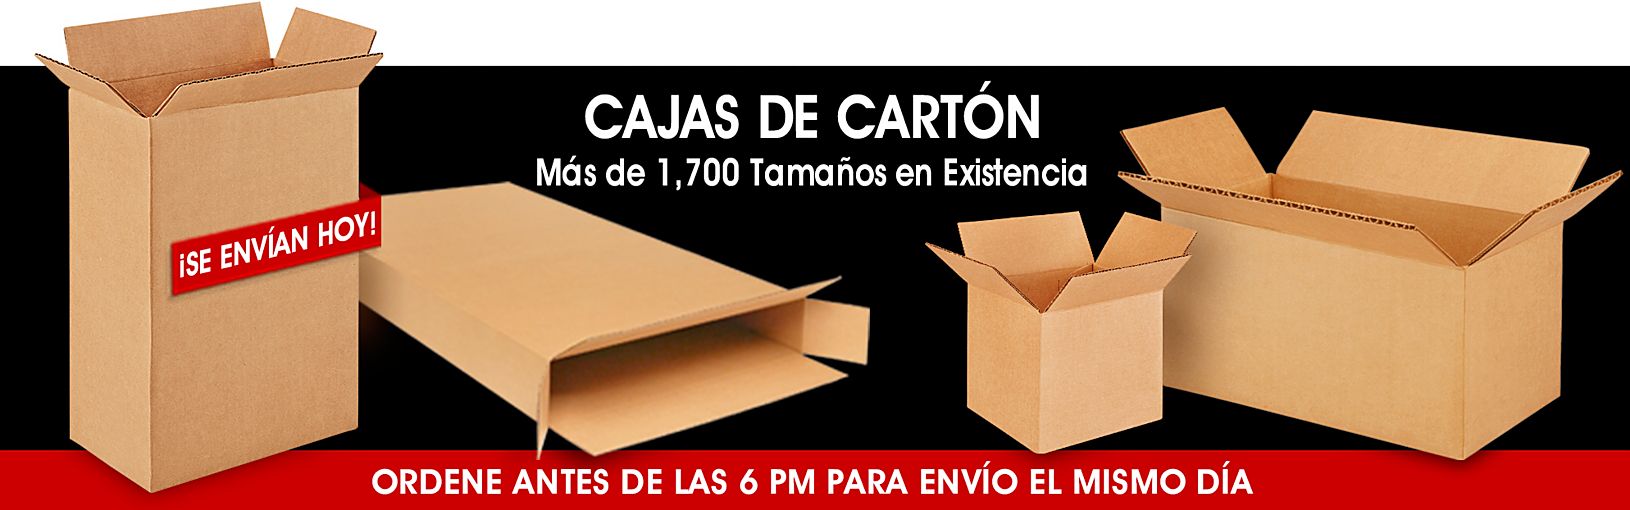 Cajas de Cartón - Más de 1,650 Tamaños de Cajas en Existencia. Ordene antes de las 6 PM para Envío el Mismo Día.